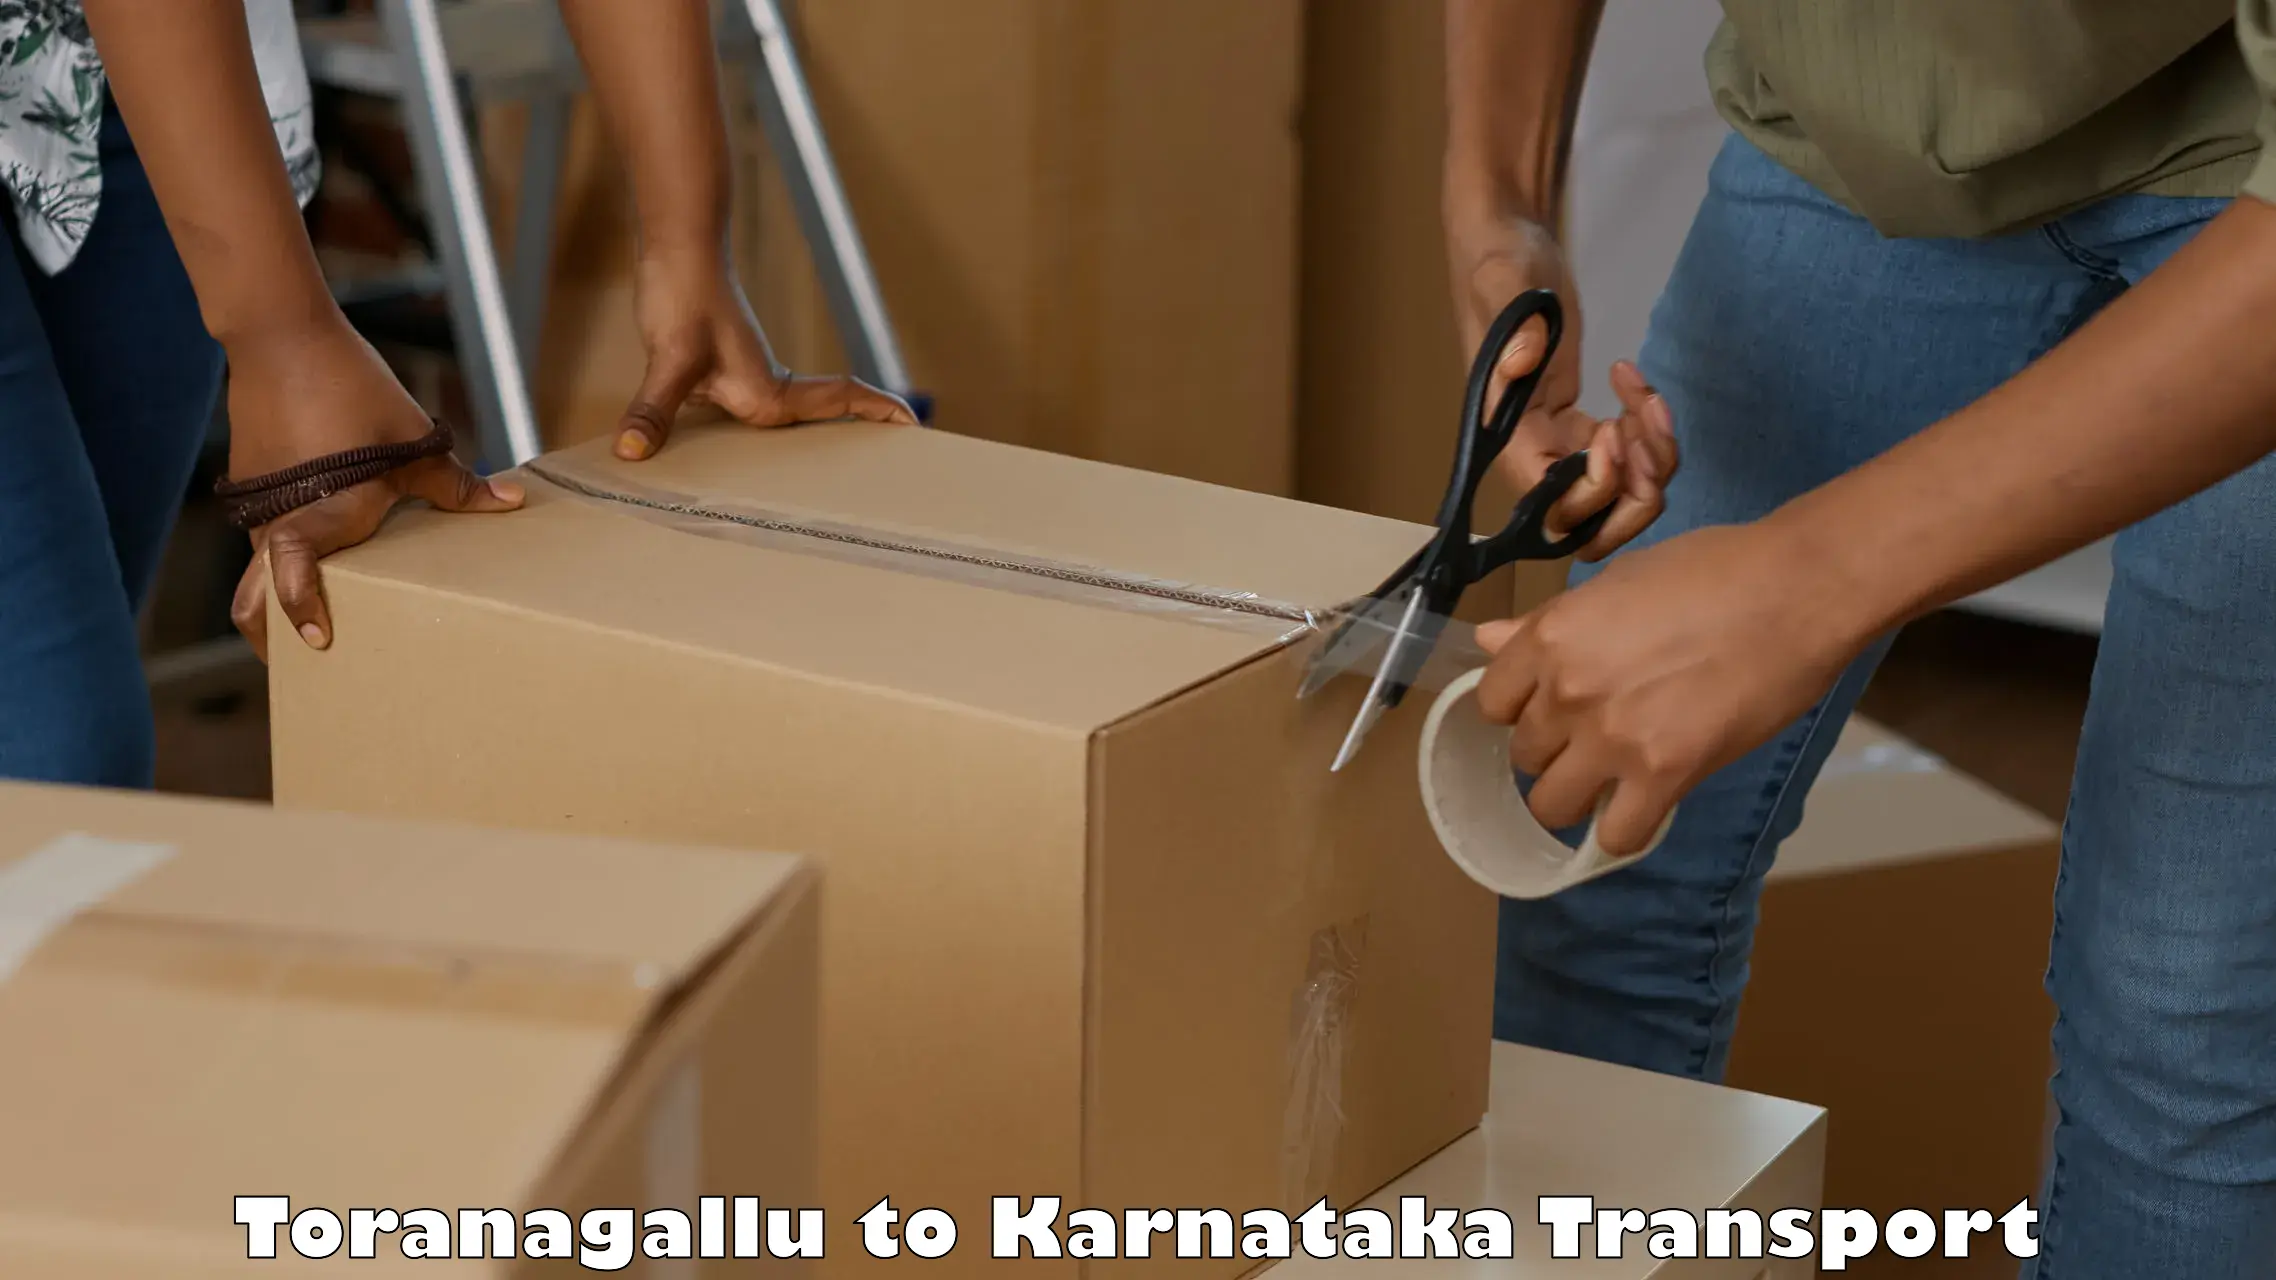 Commercial transport service Toranagallu to Kolar